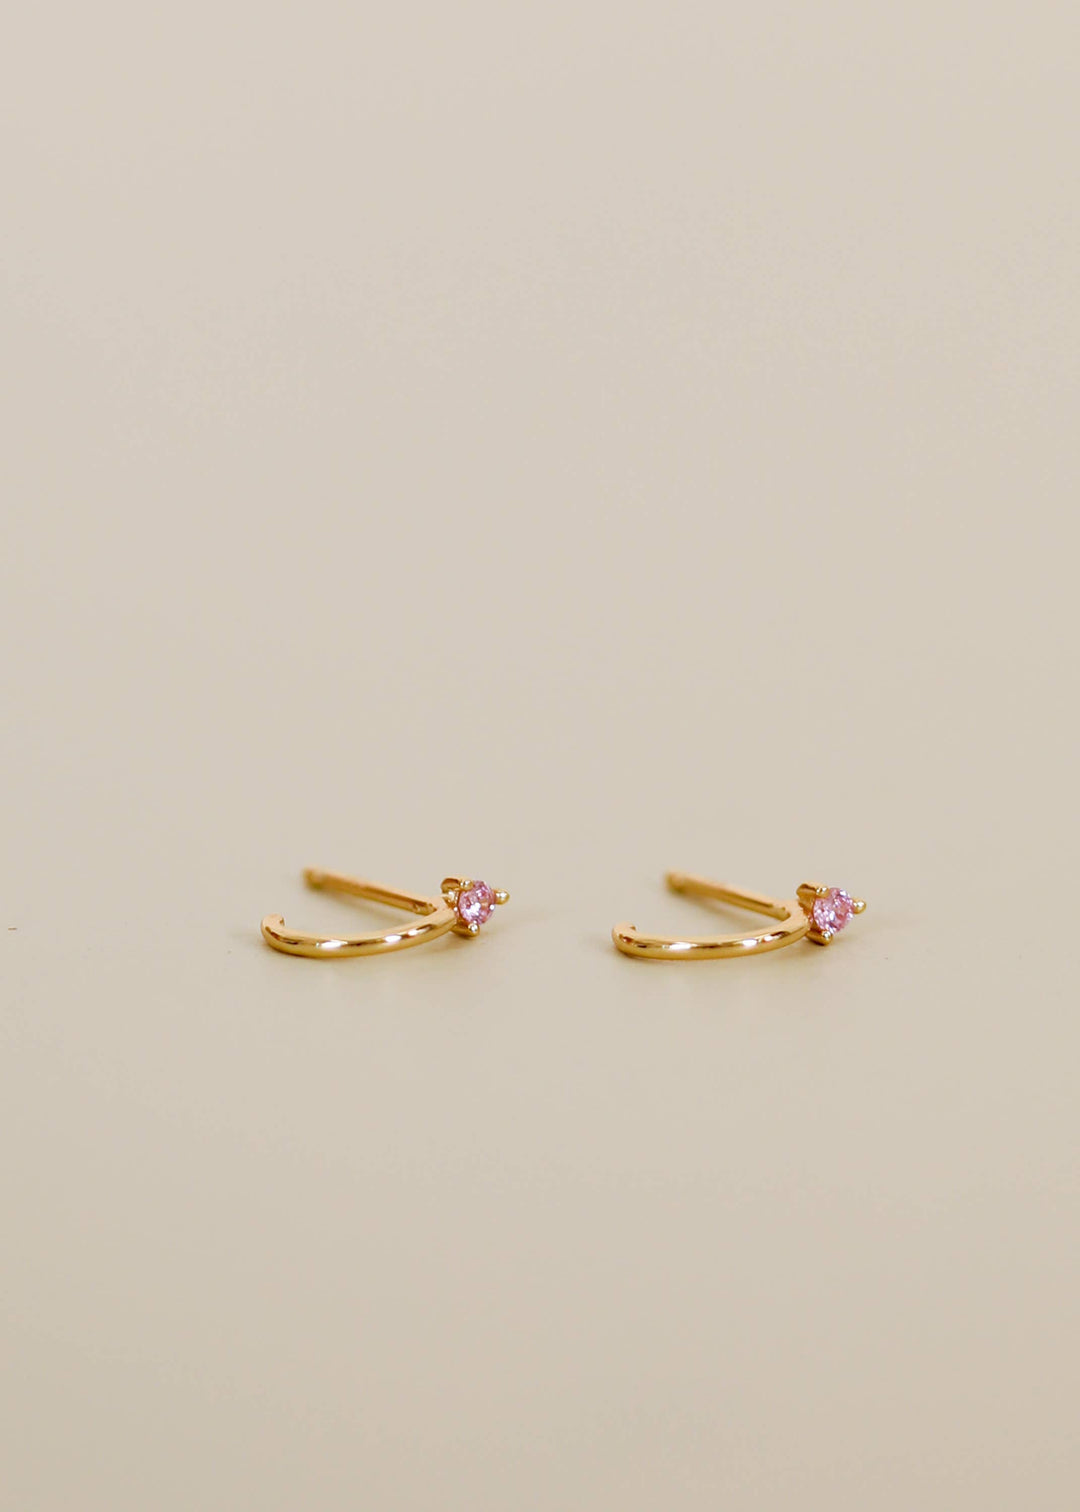 JaxKelly Earrings Open Mini Hoop Earring - Pink